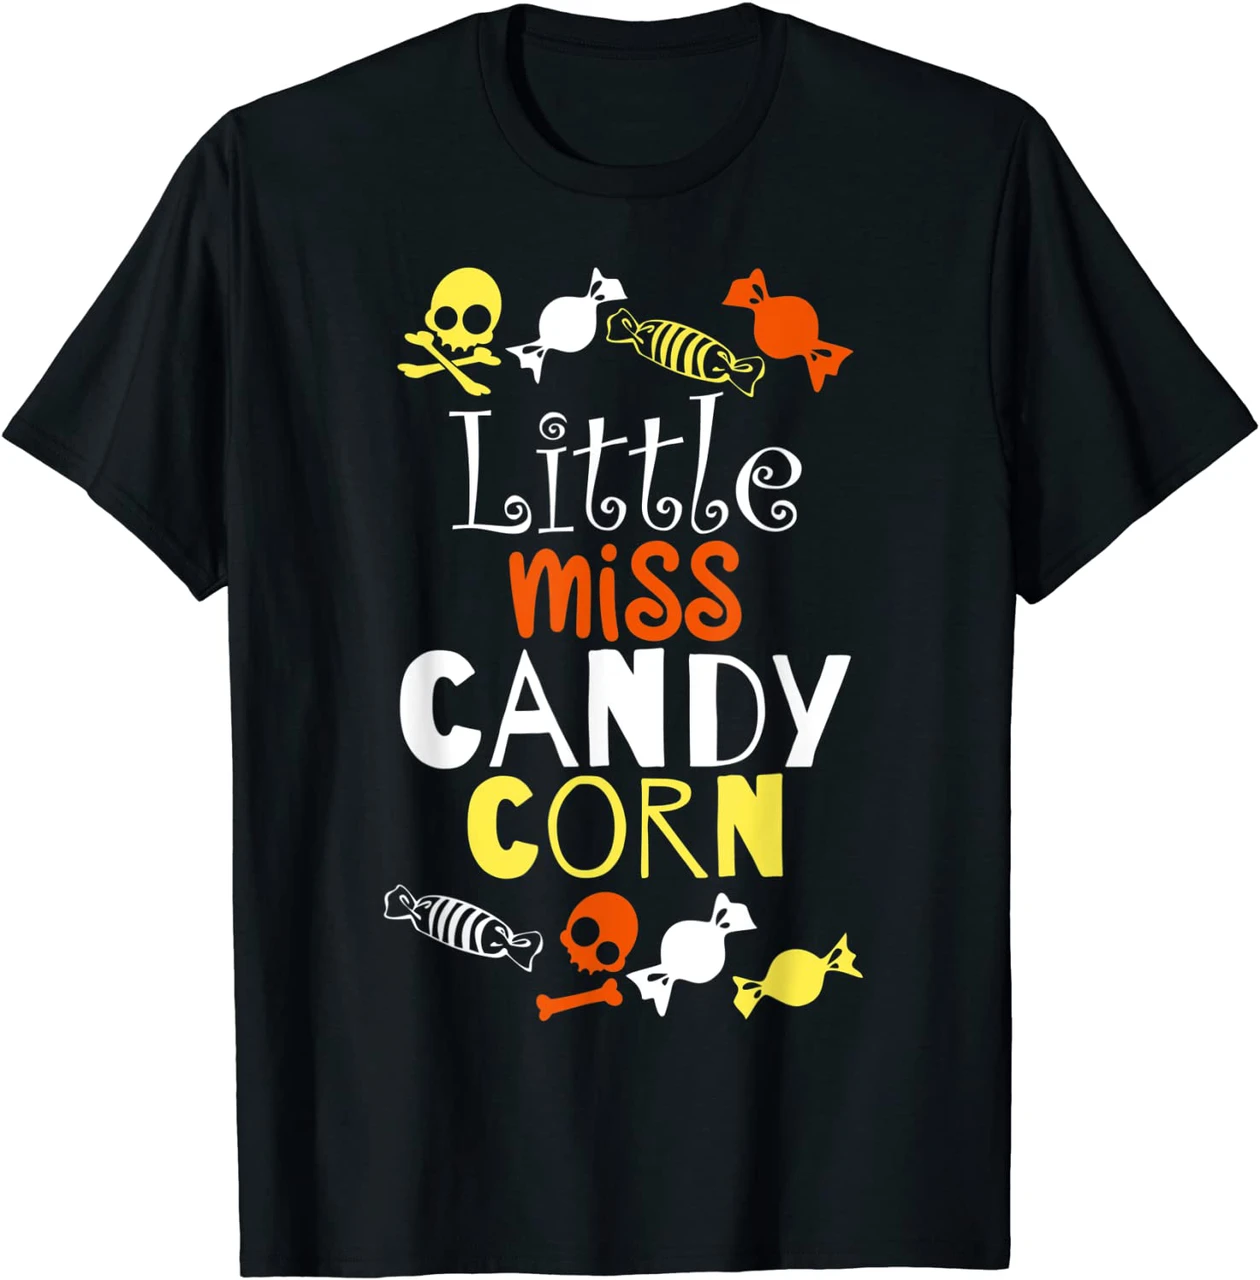 Little Miss Candy Corn Funny Halloween Shirt